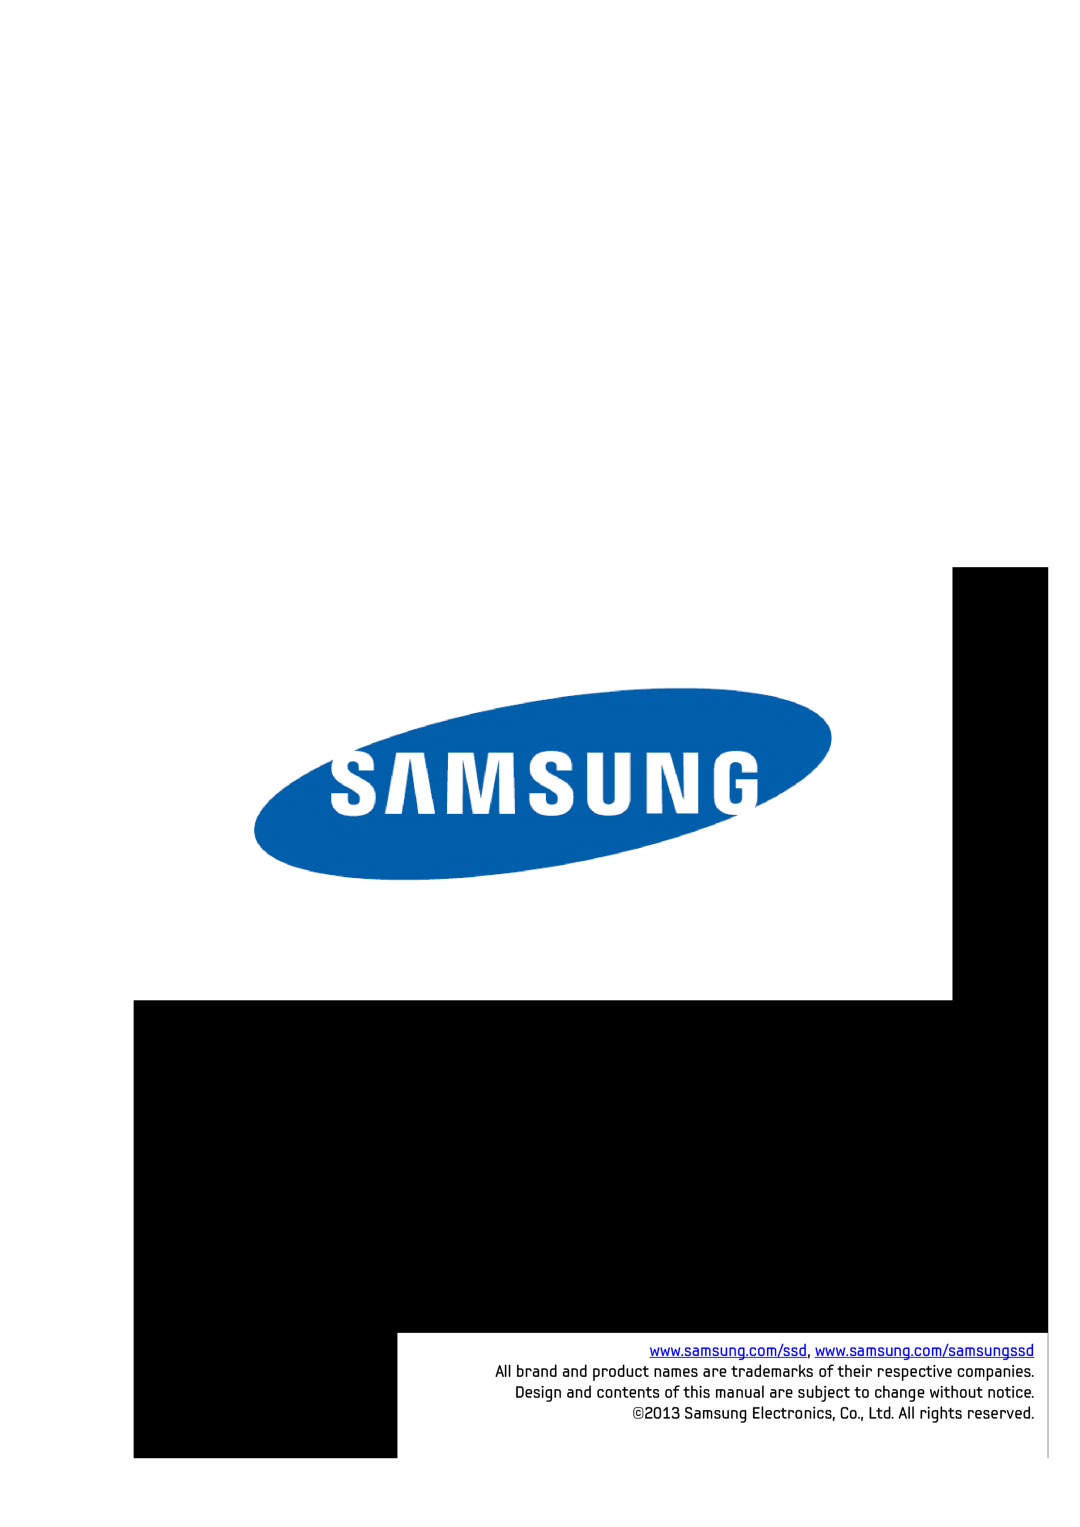 Samsung MZ-5PA064C/EU, MZ-5PA064/EU, MZ-7PC256D/EU, MZ-7PC512D/EU, MZ-5PA256C/EU, MZ-5PA128C/EU, MZ-7PC128N/EU, MZ-7PC128D/EU 